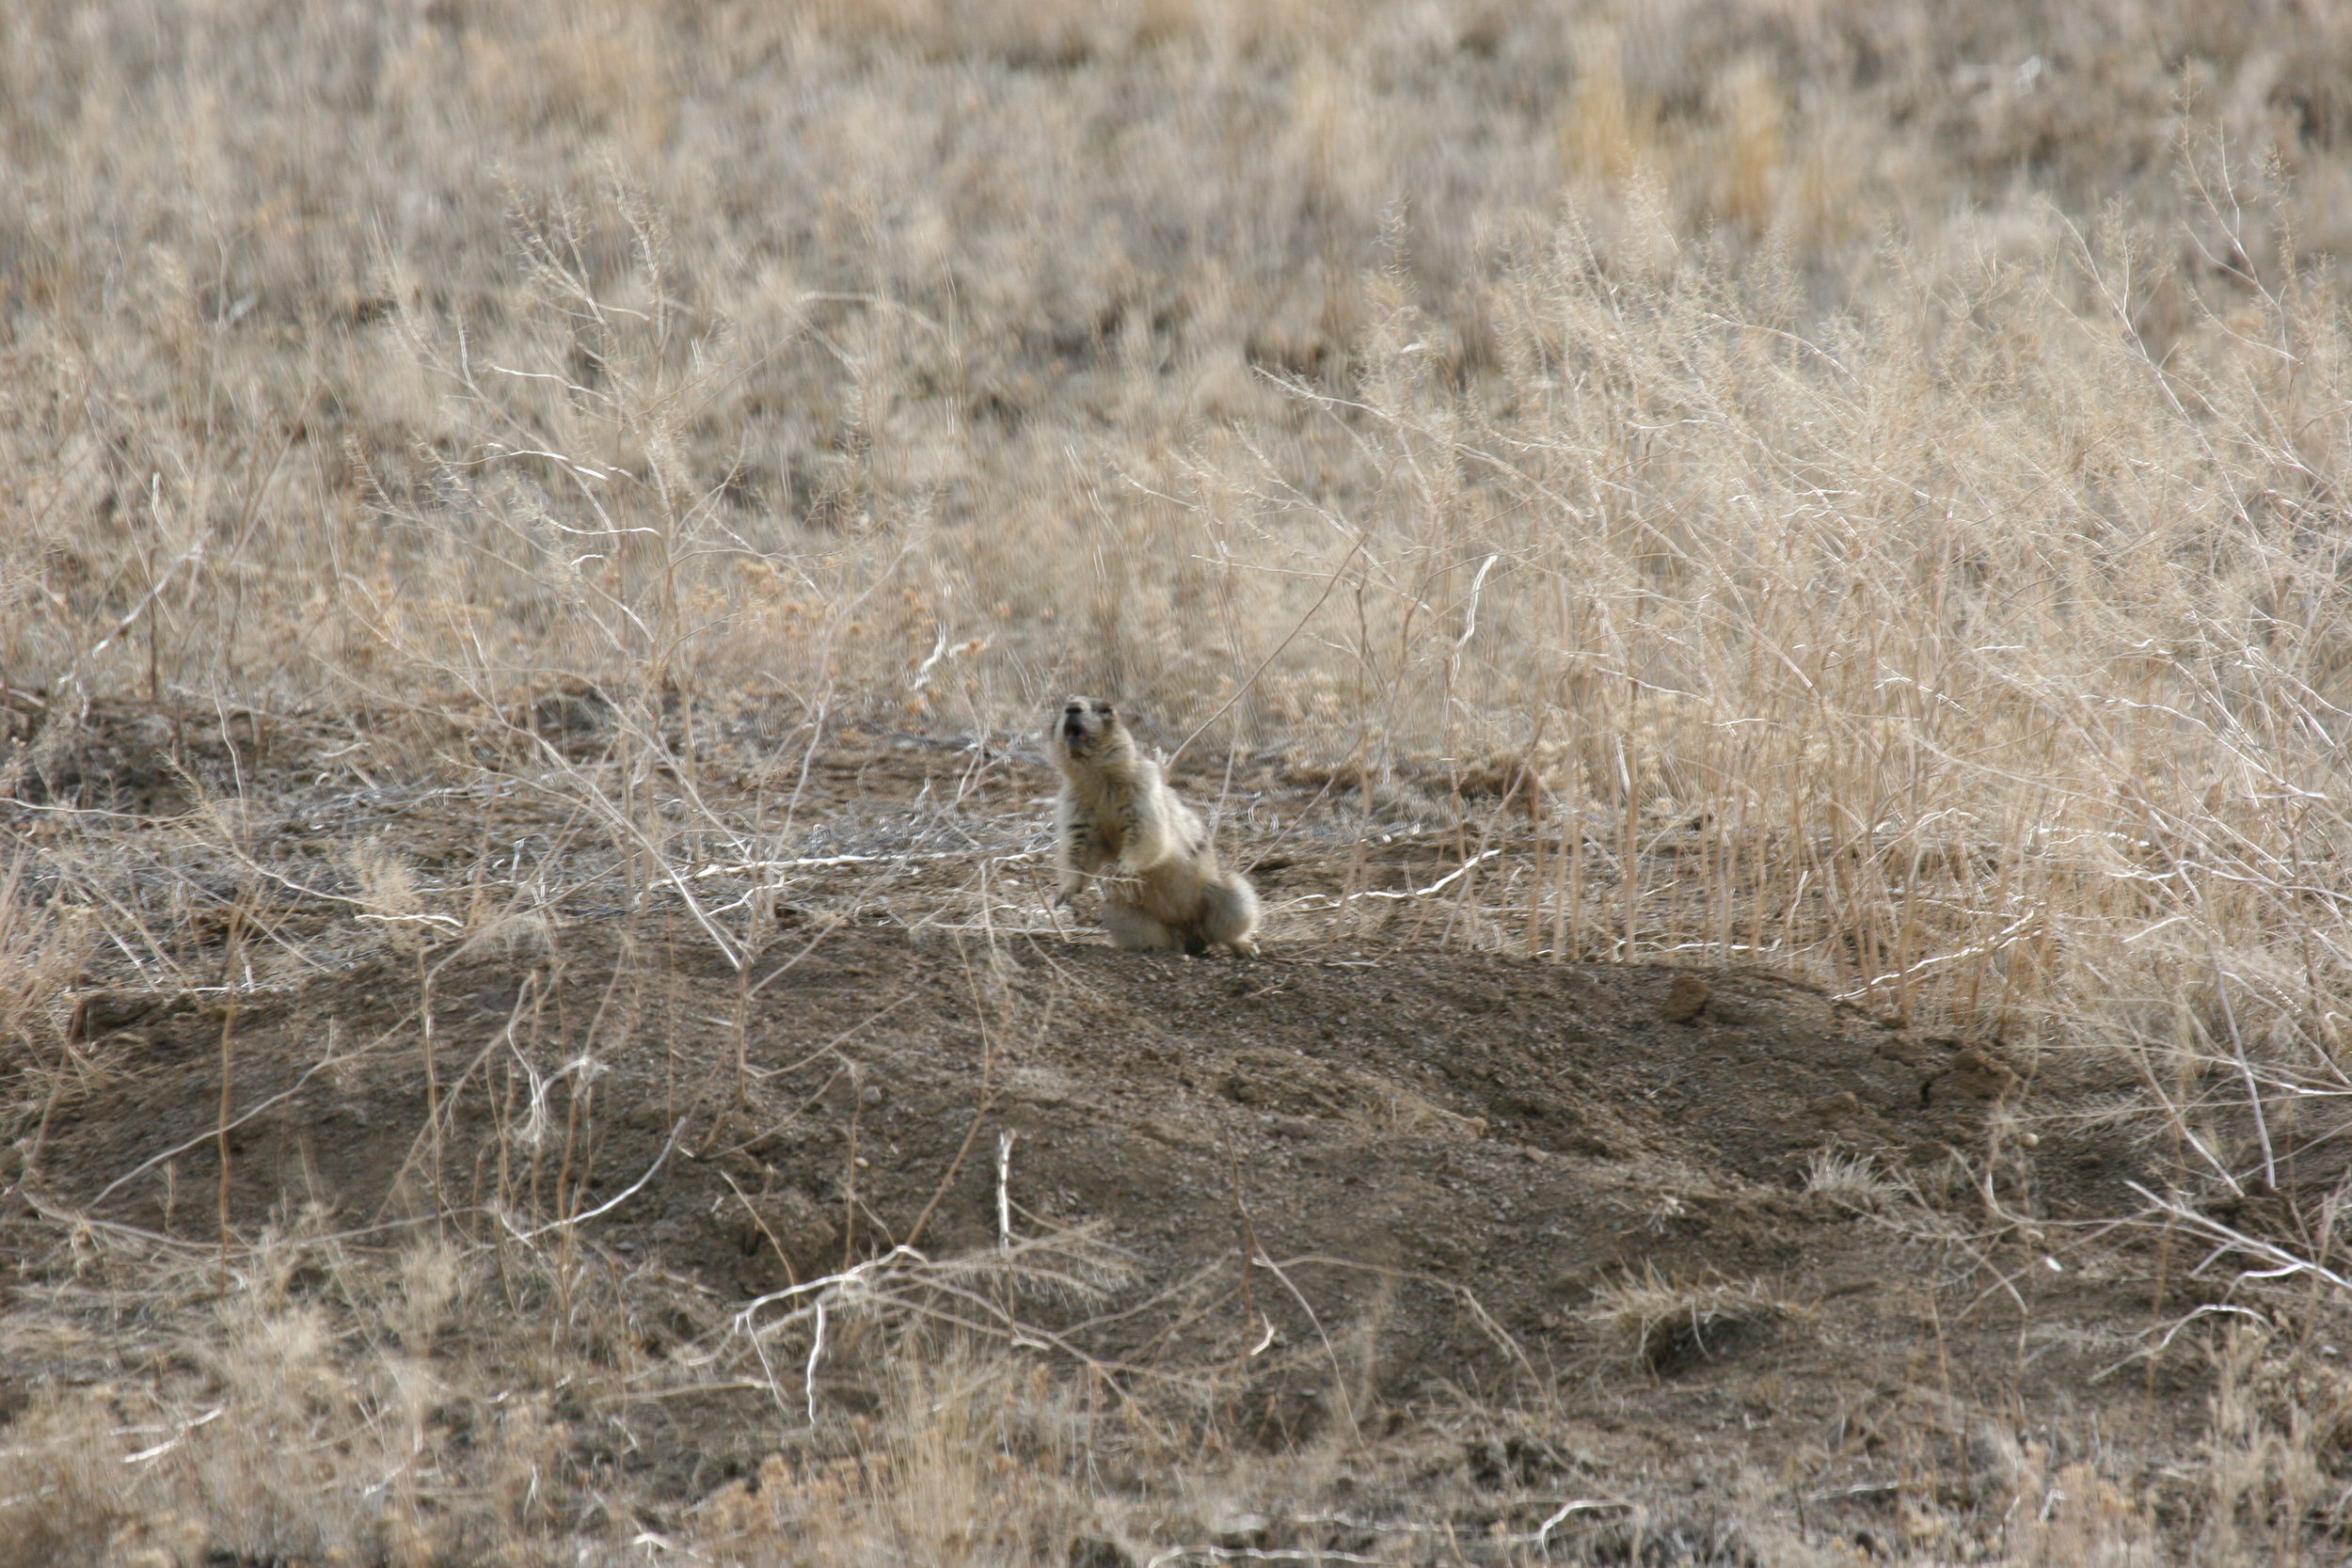  A white-tailed prairie dog territorial call.  ©John Hoogland 2006  